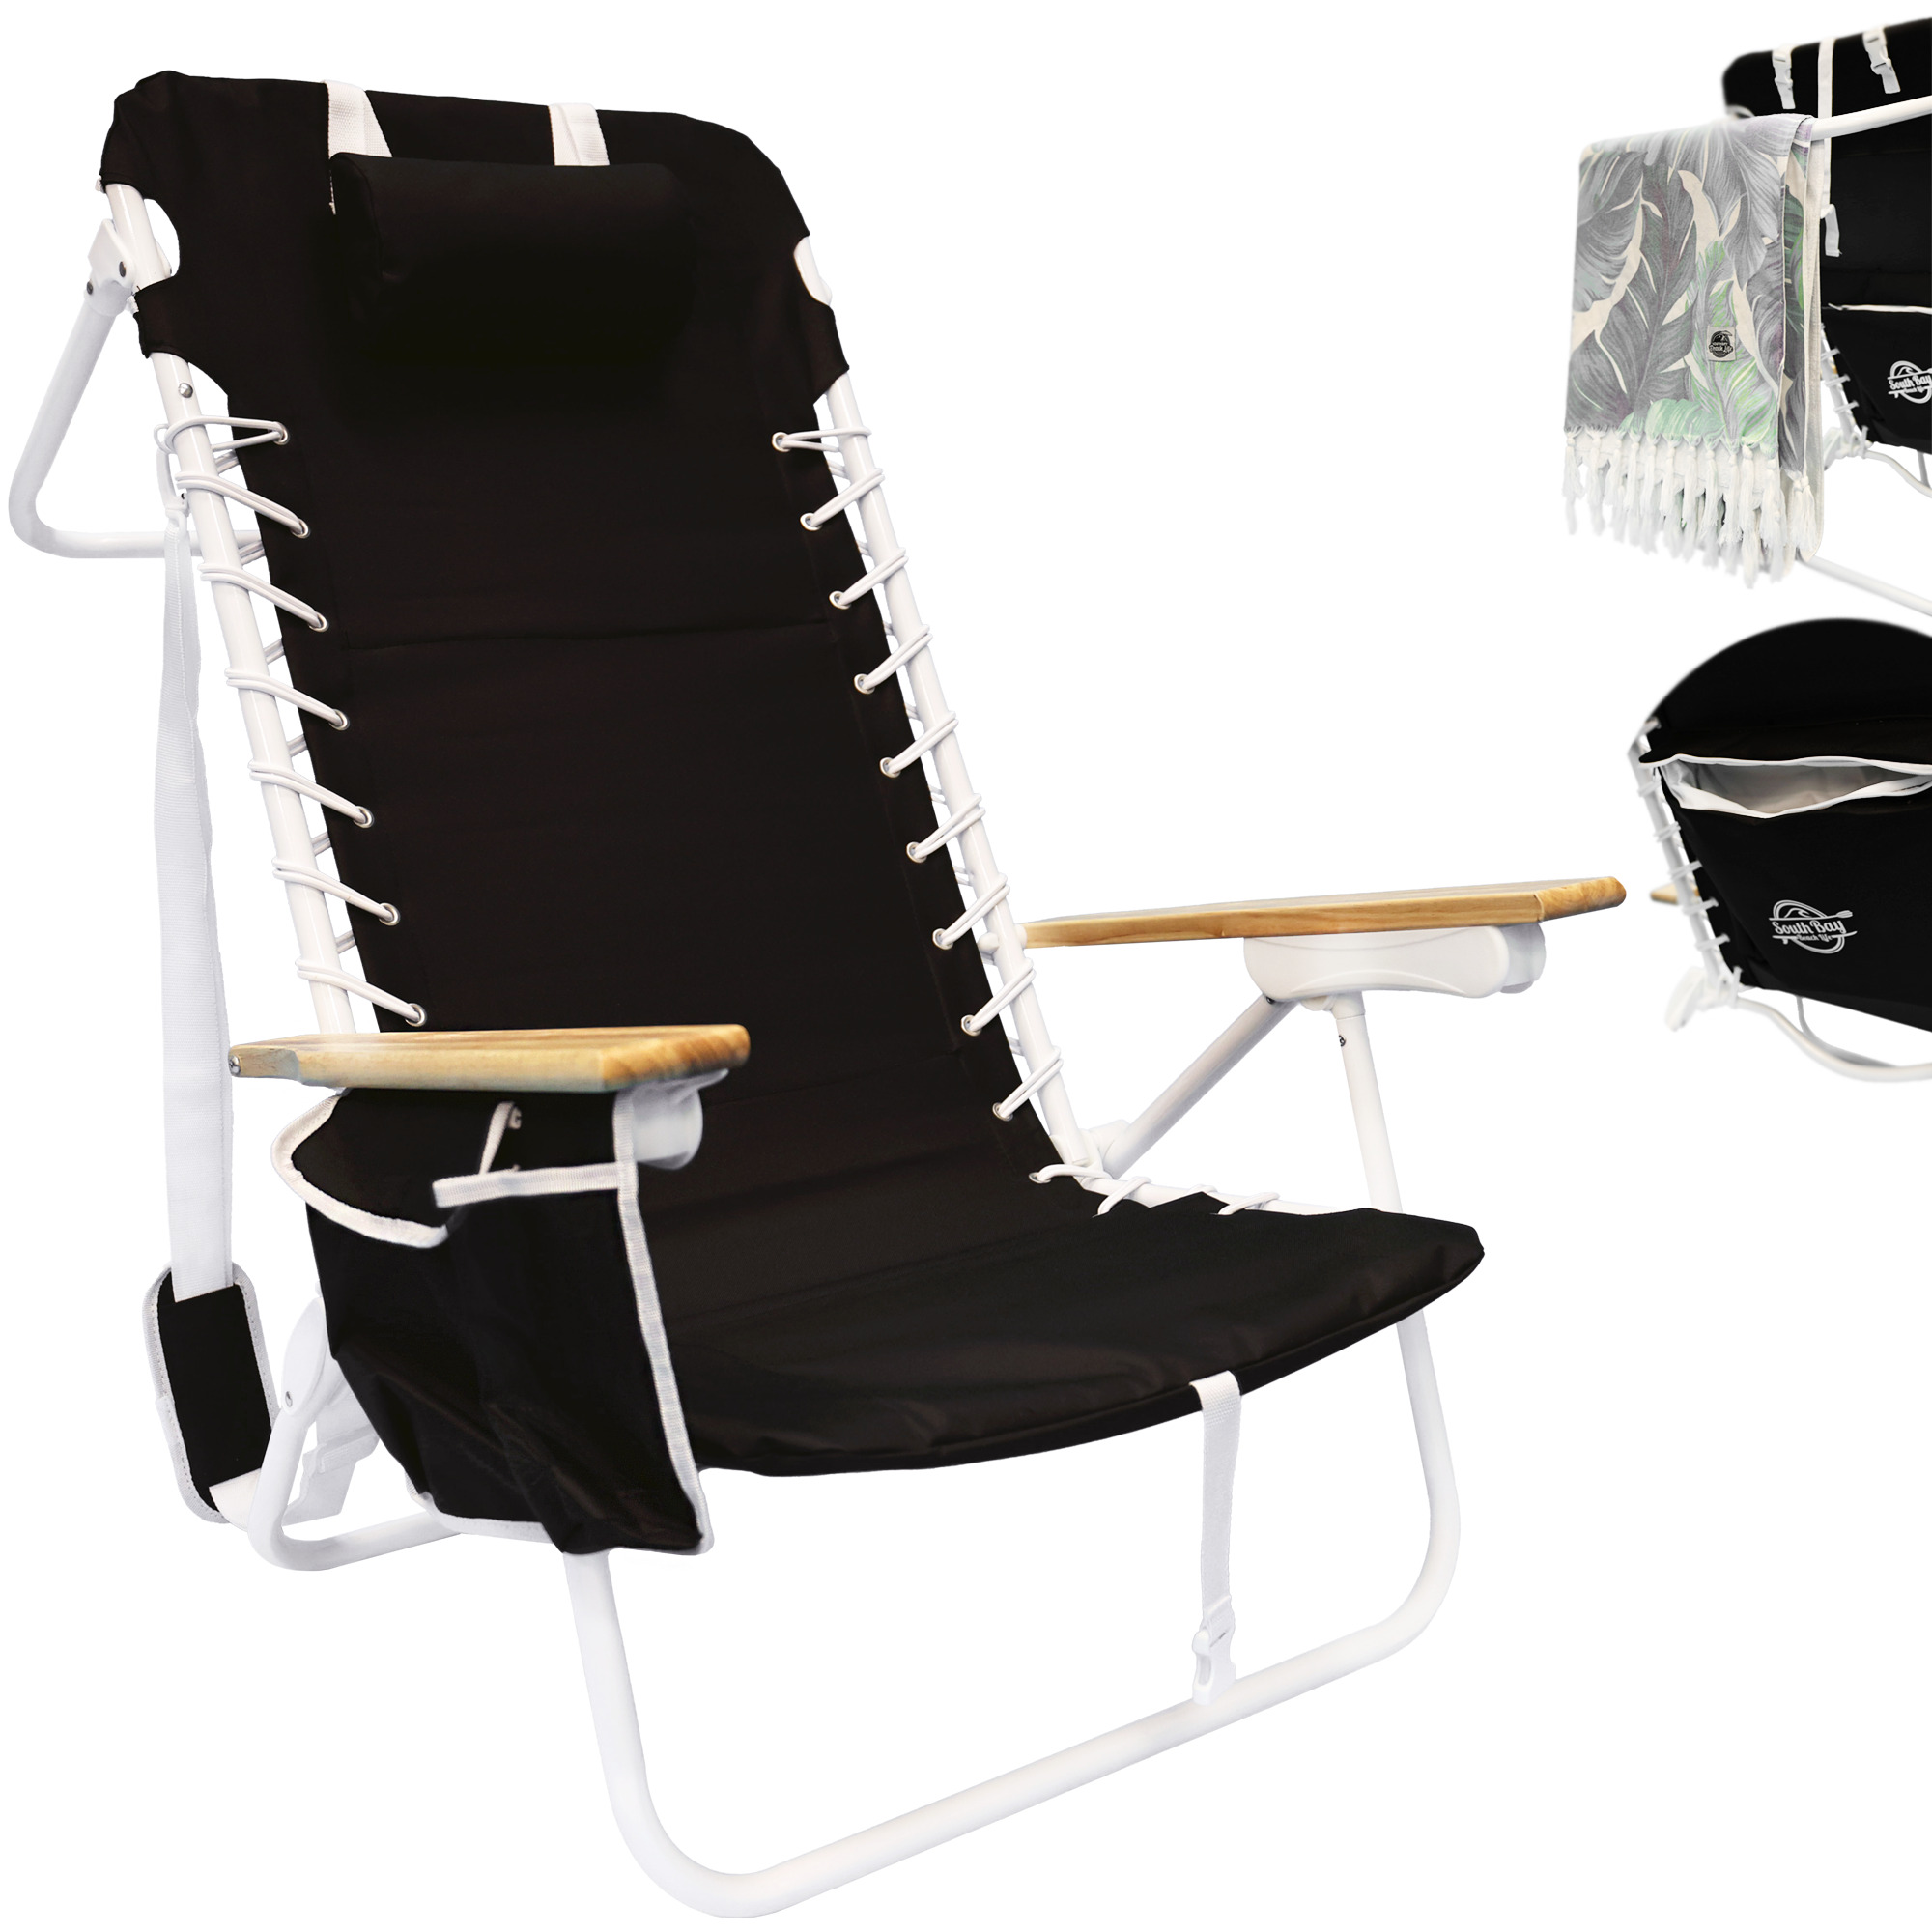 The XL Aluminium Beach Chair - image 1 of 6